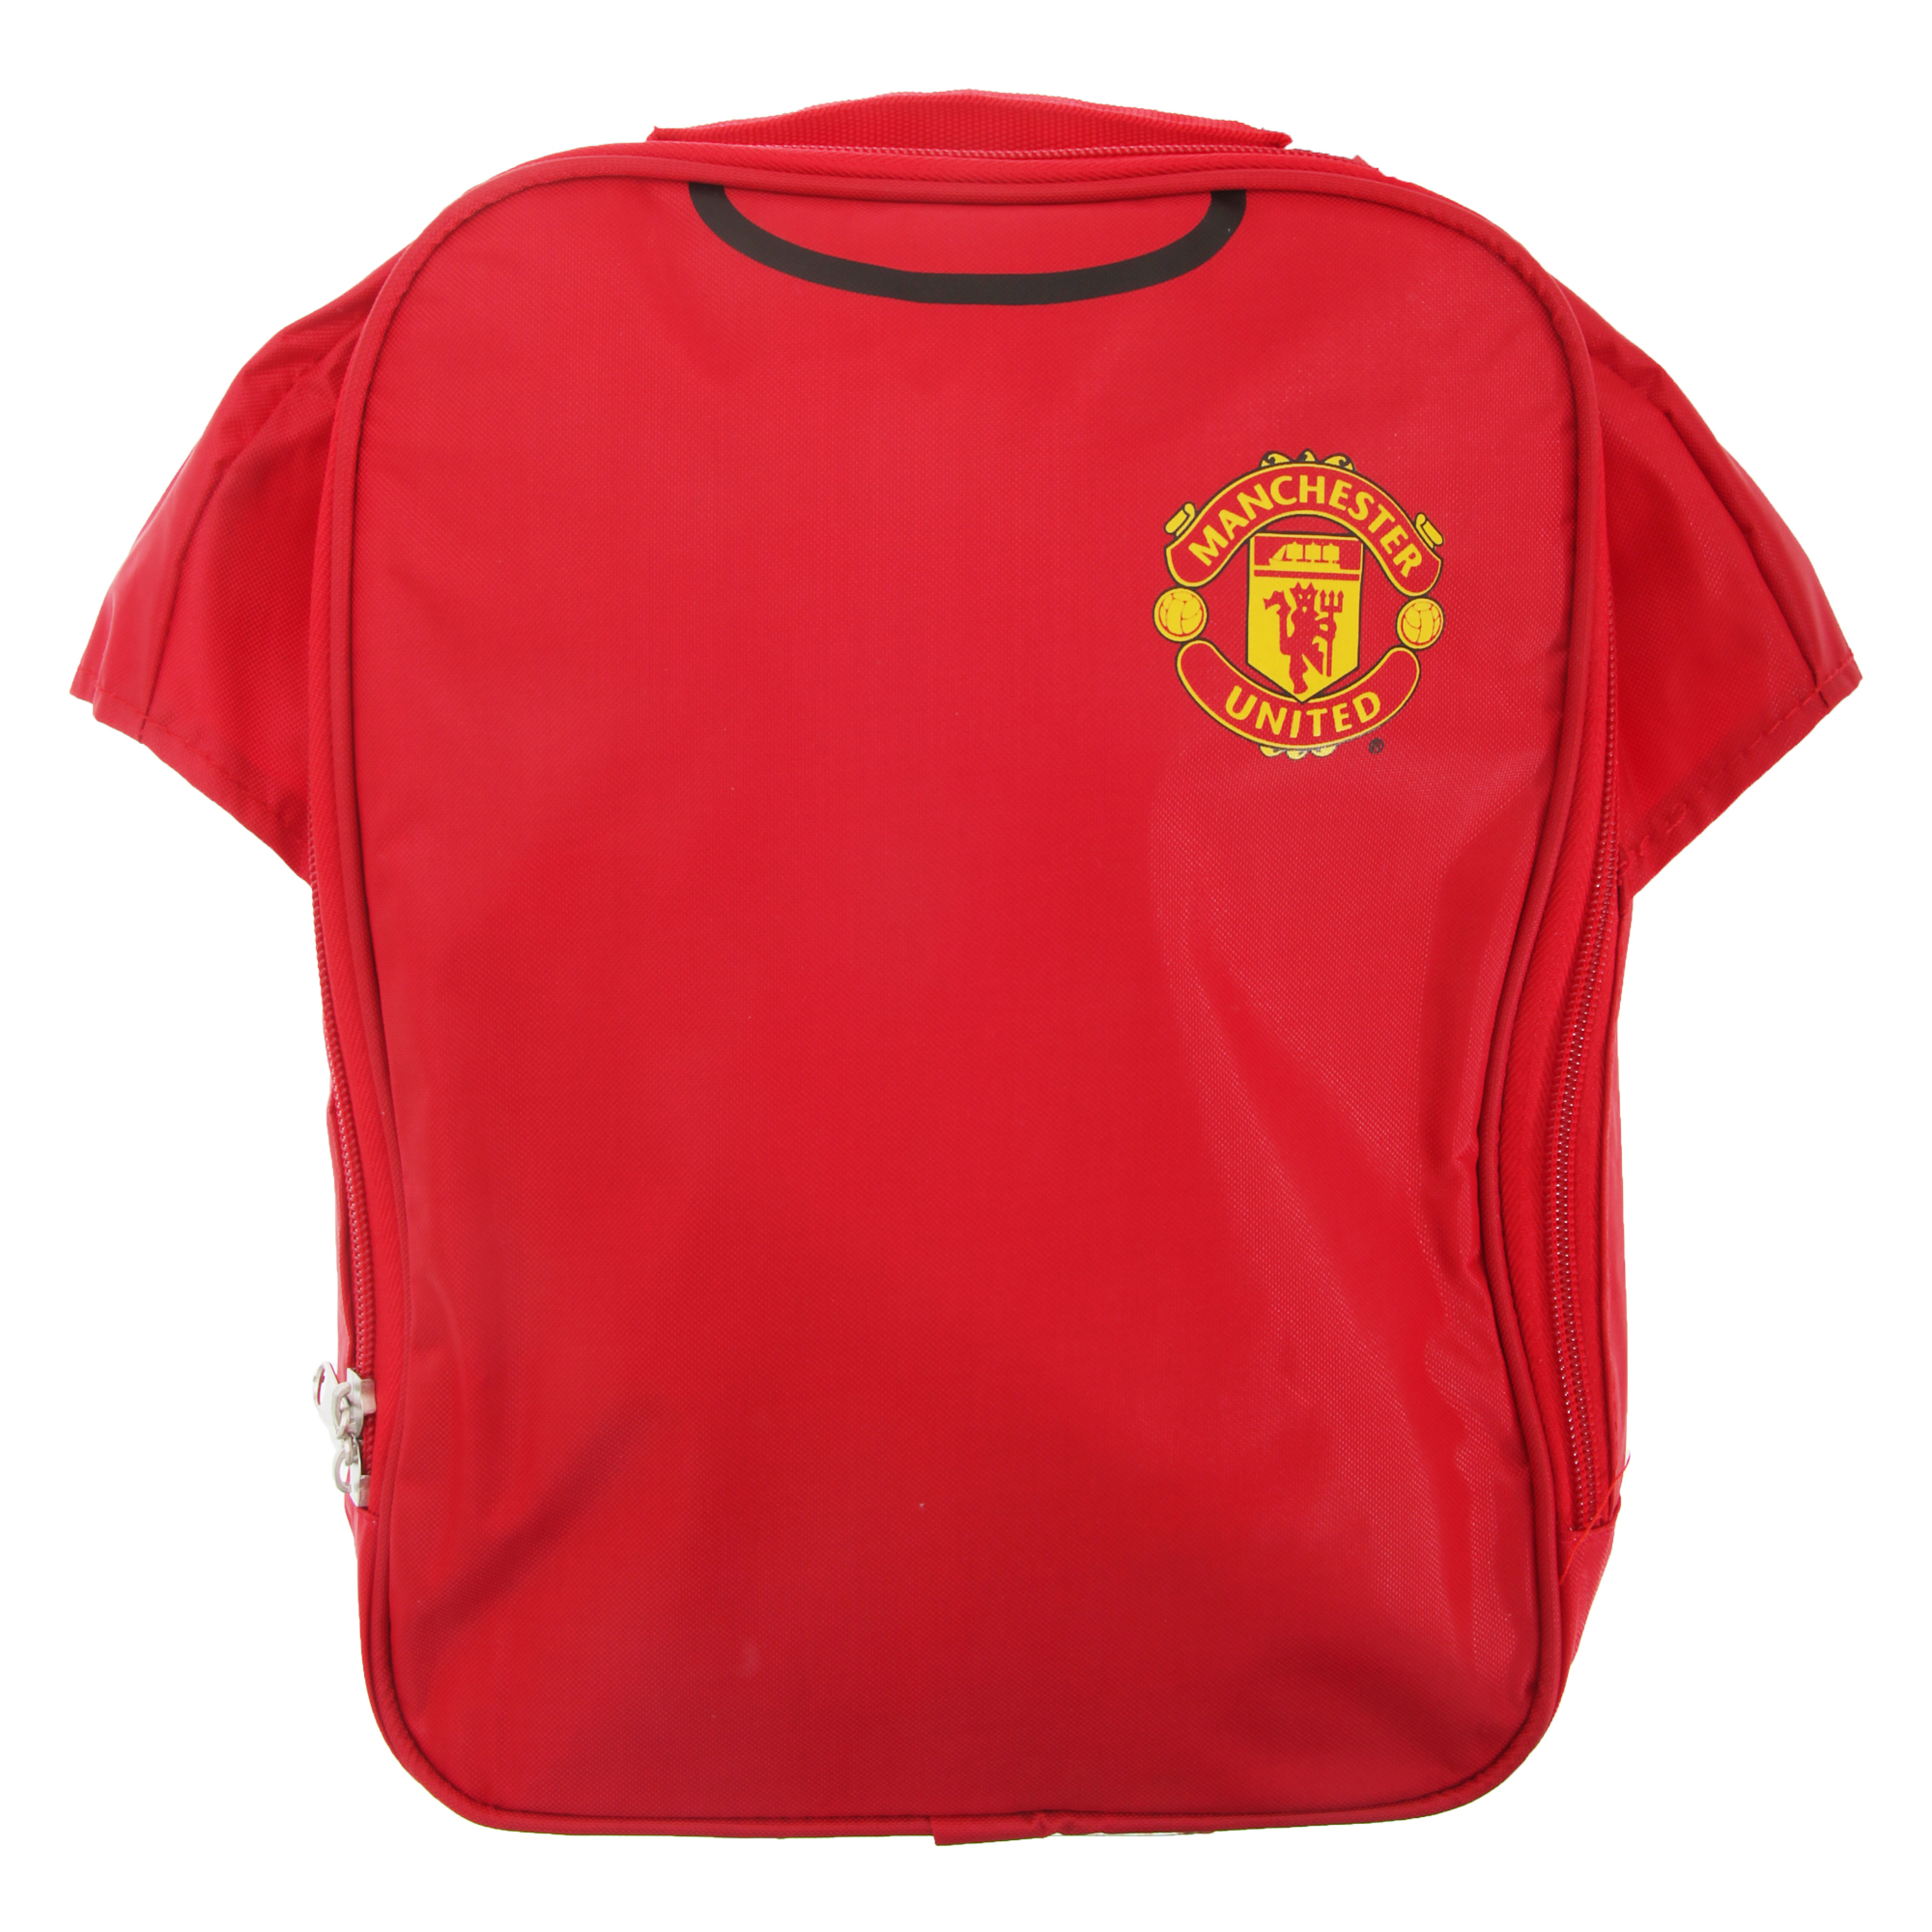 Bolsa / Fiambrera Para La Comida Térmica Con Diseño De Camiseta De Manchester United Fc